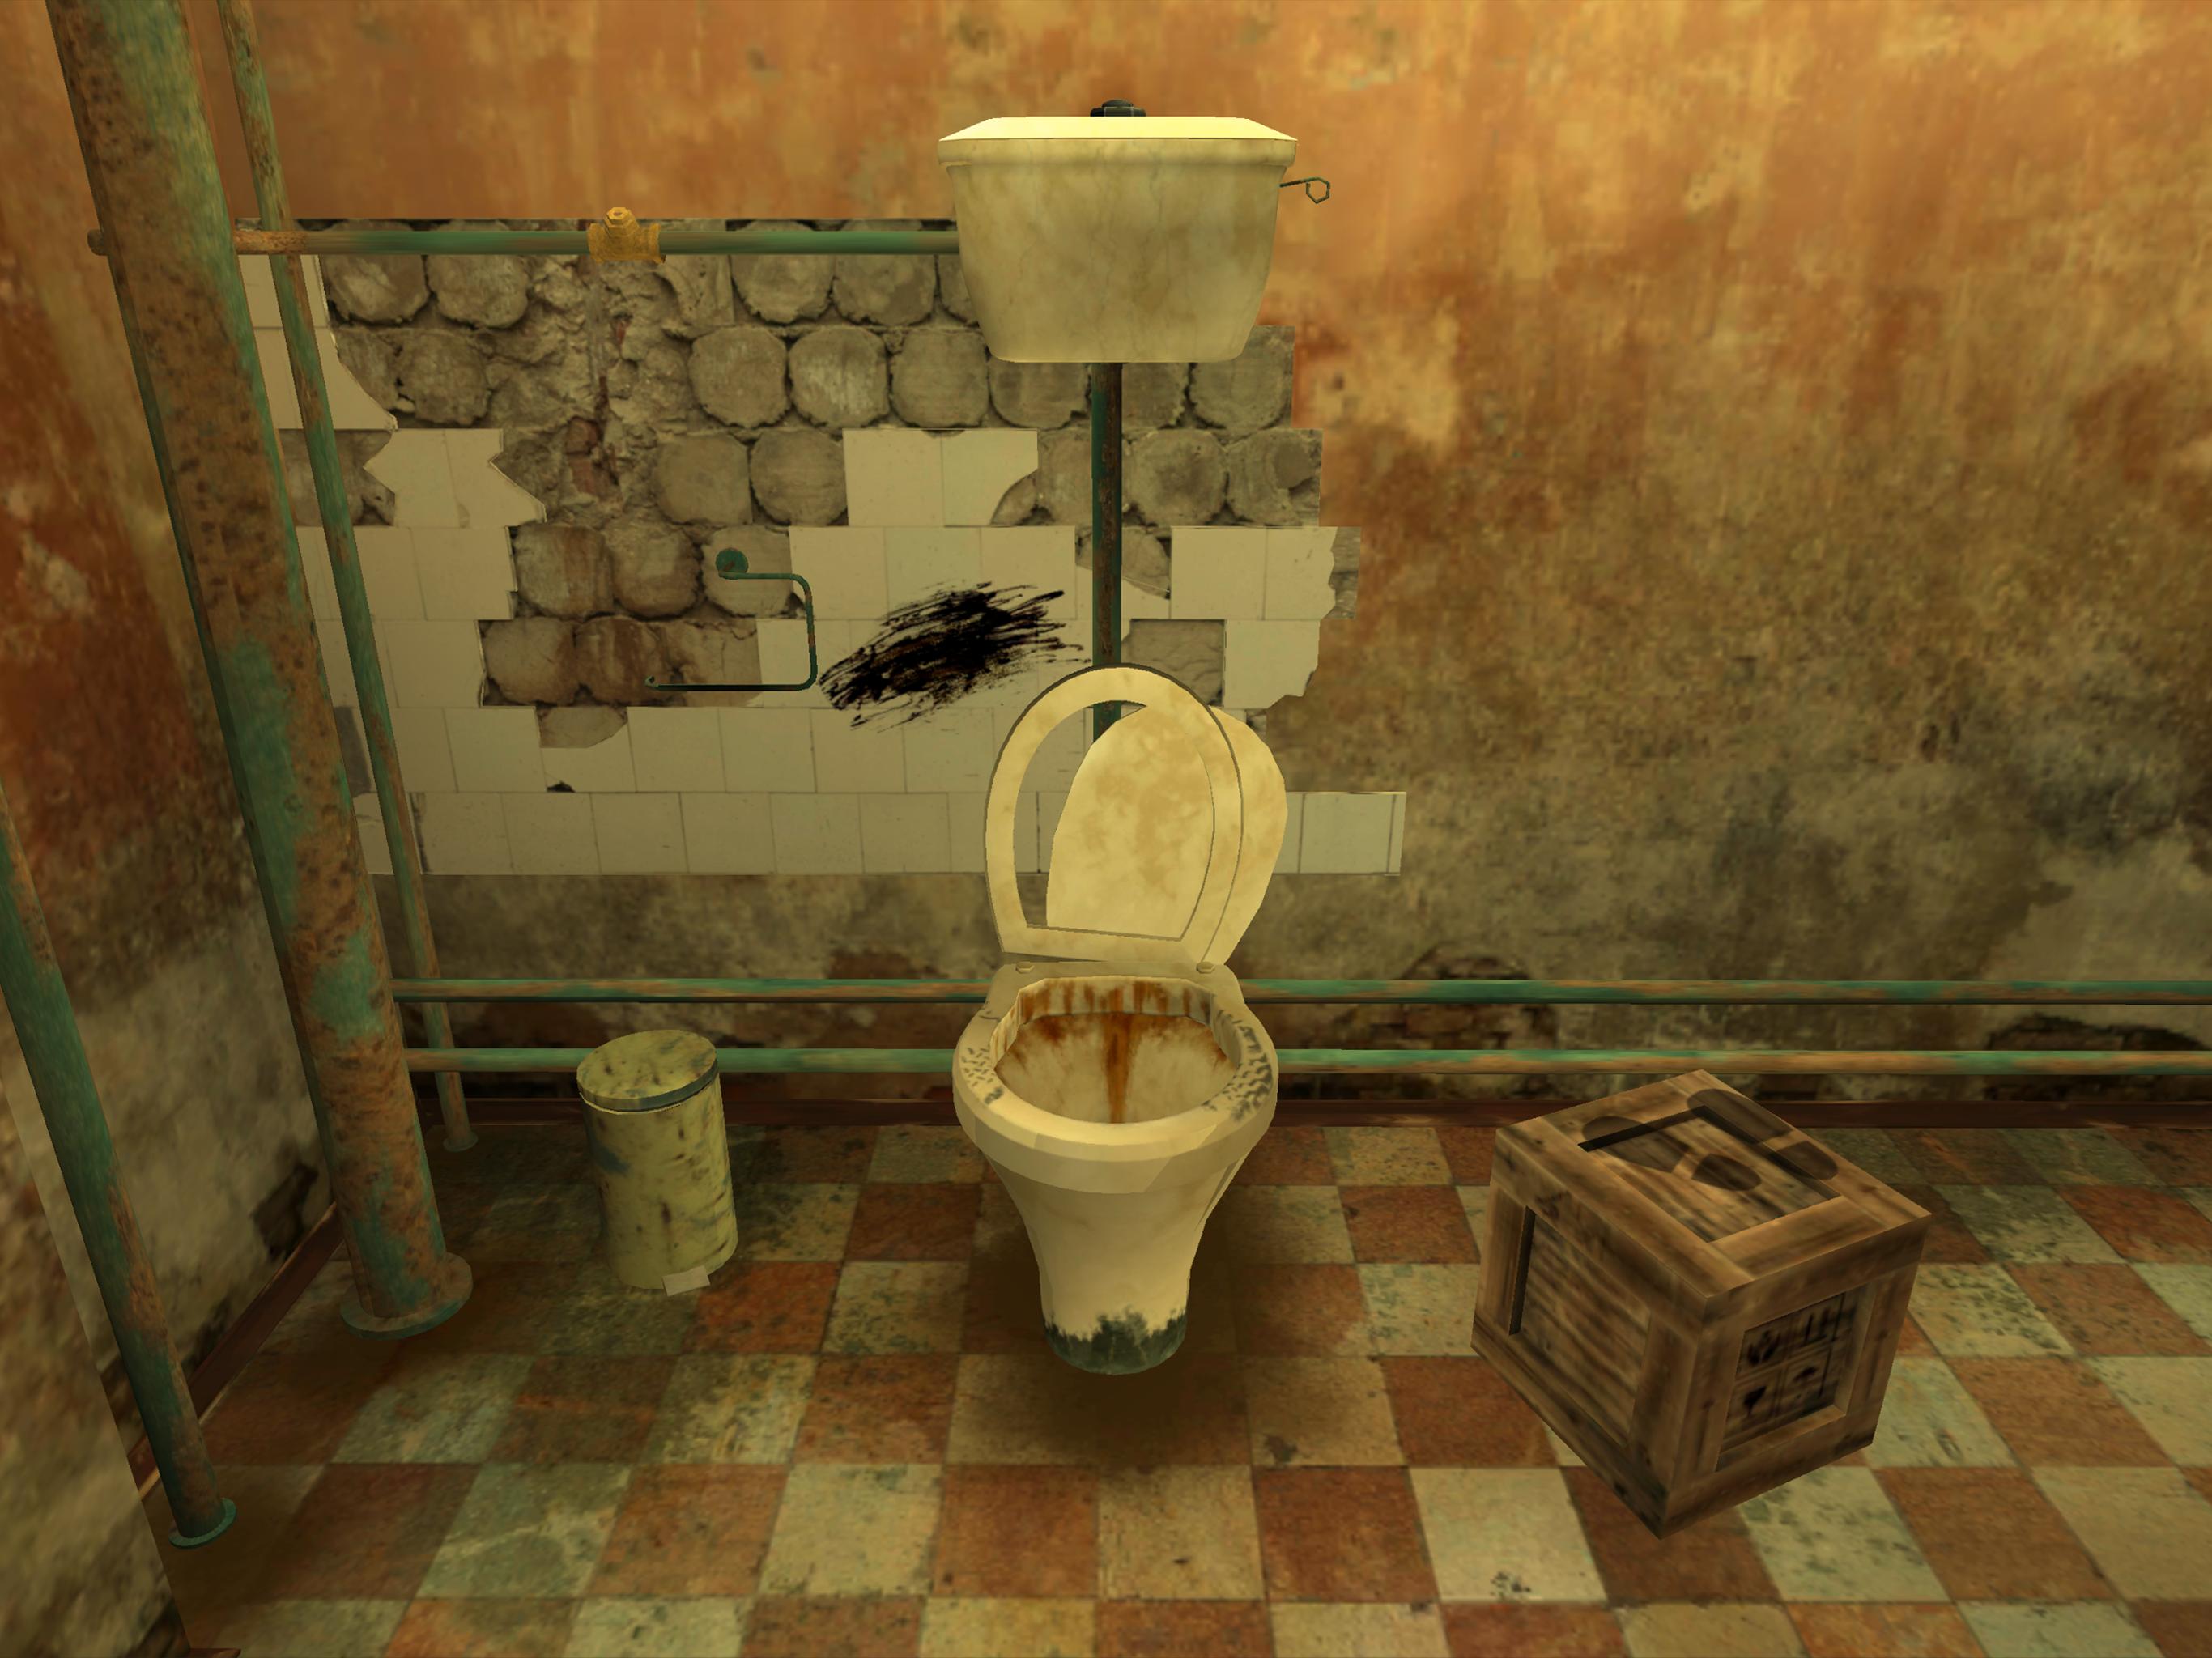 Новая игра про туалеты